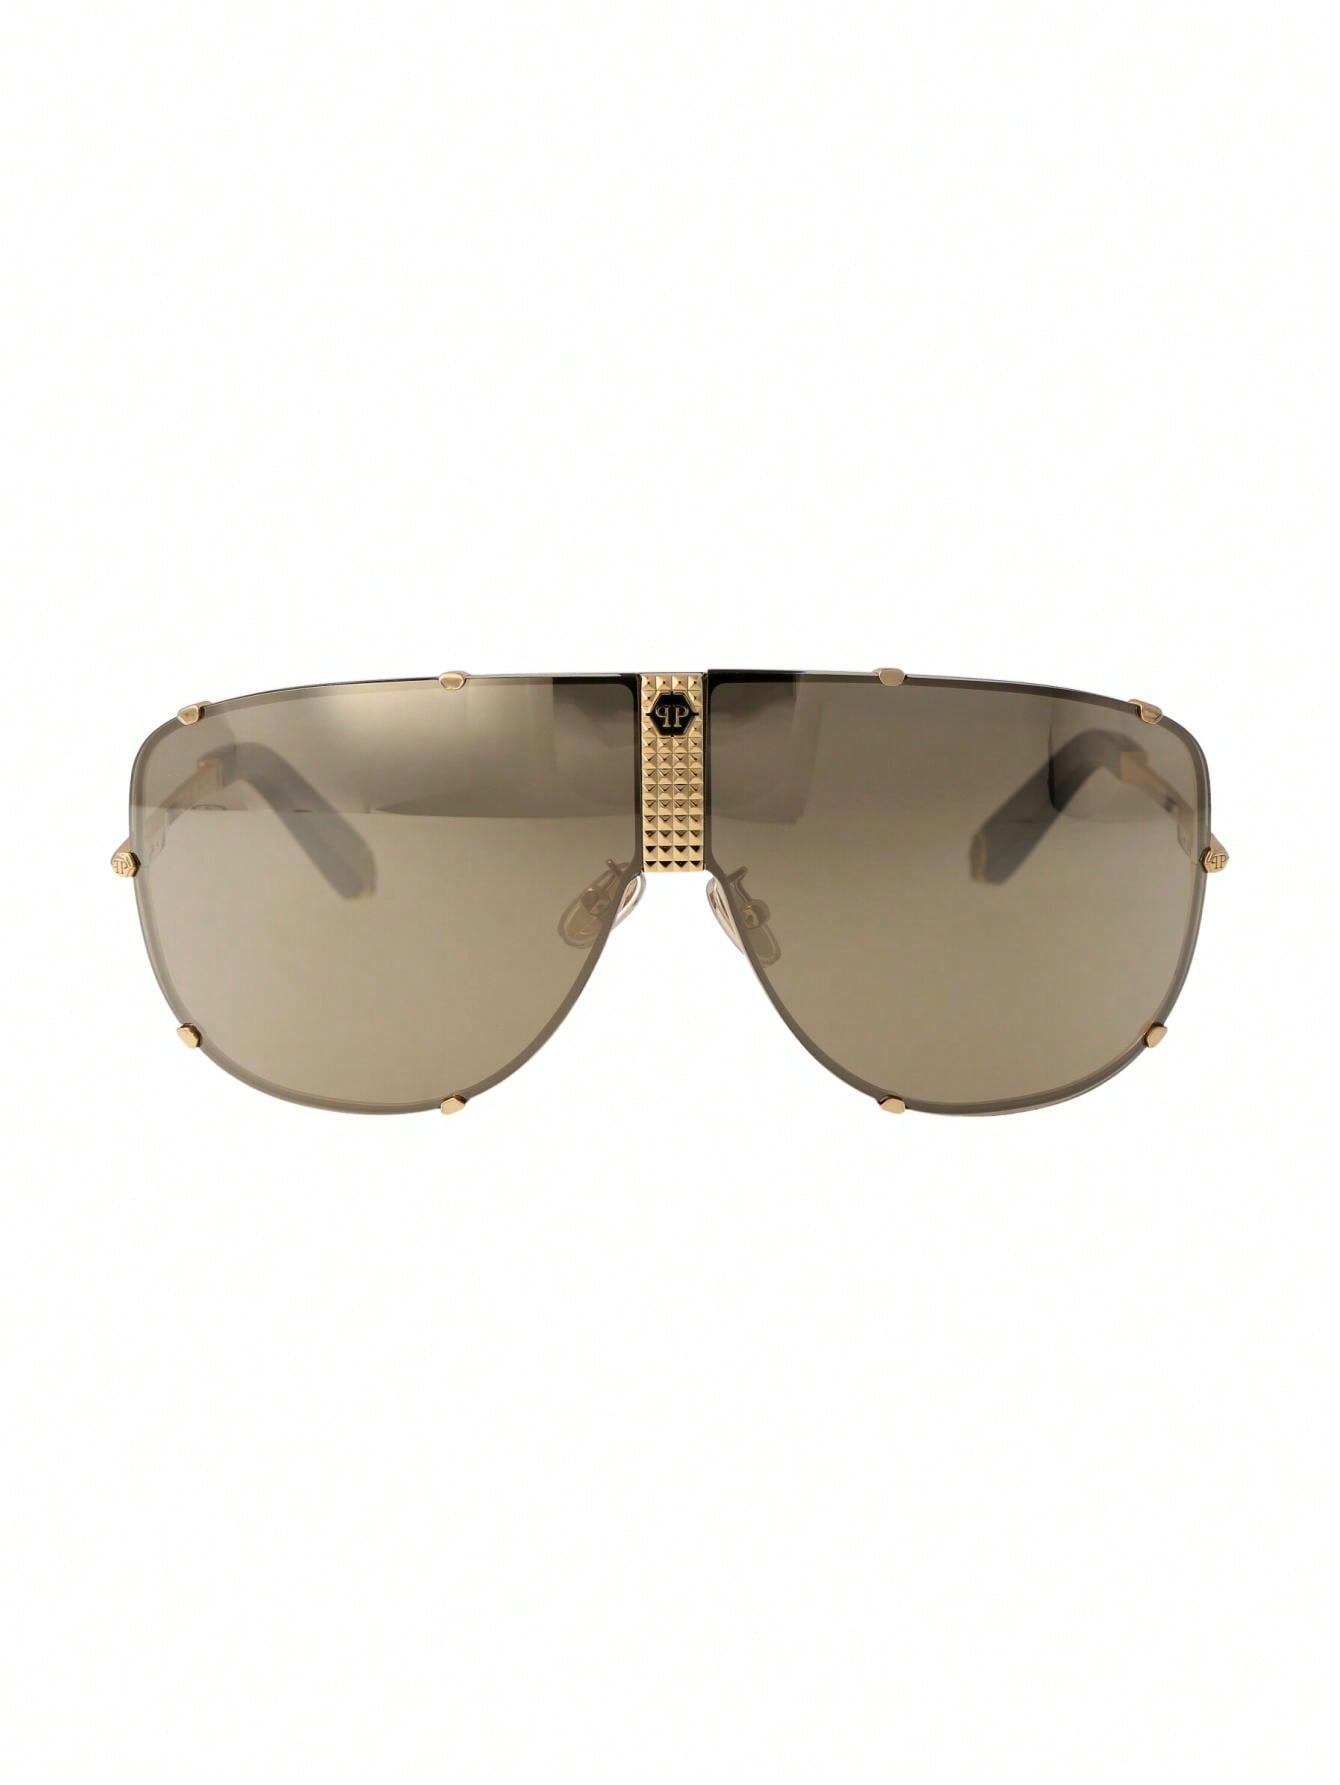 Мужские солнцезащитные очки Philipp Plein DECOR SPP075M400G, многоцветный солнцезащитные очки philipp plein 025s 700